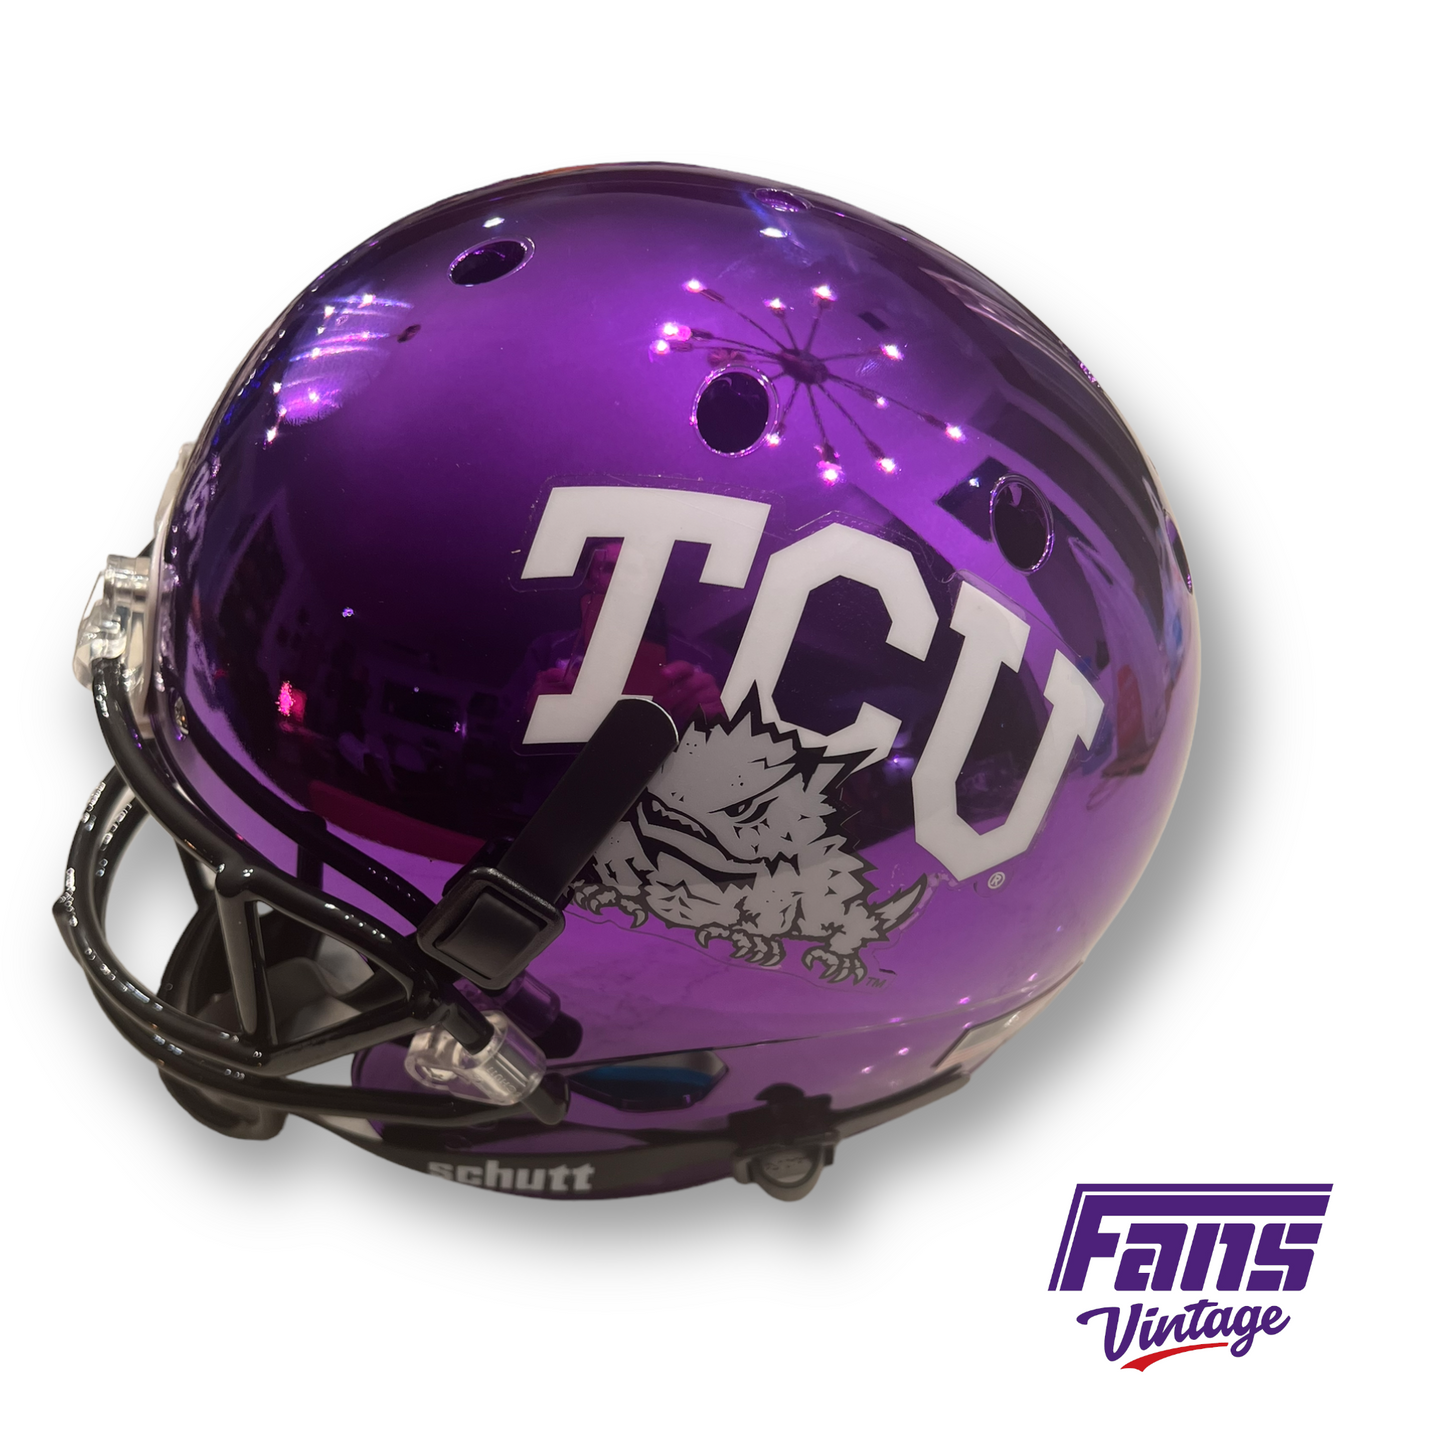 Autographed Purple Chrome TCU Football LaDainian Tomlinson Helmet!